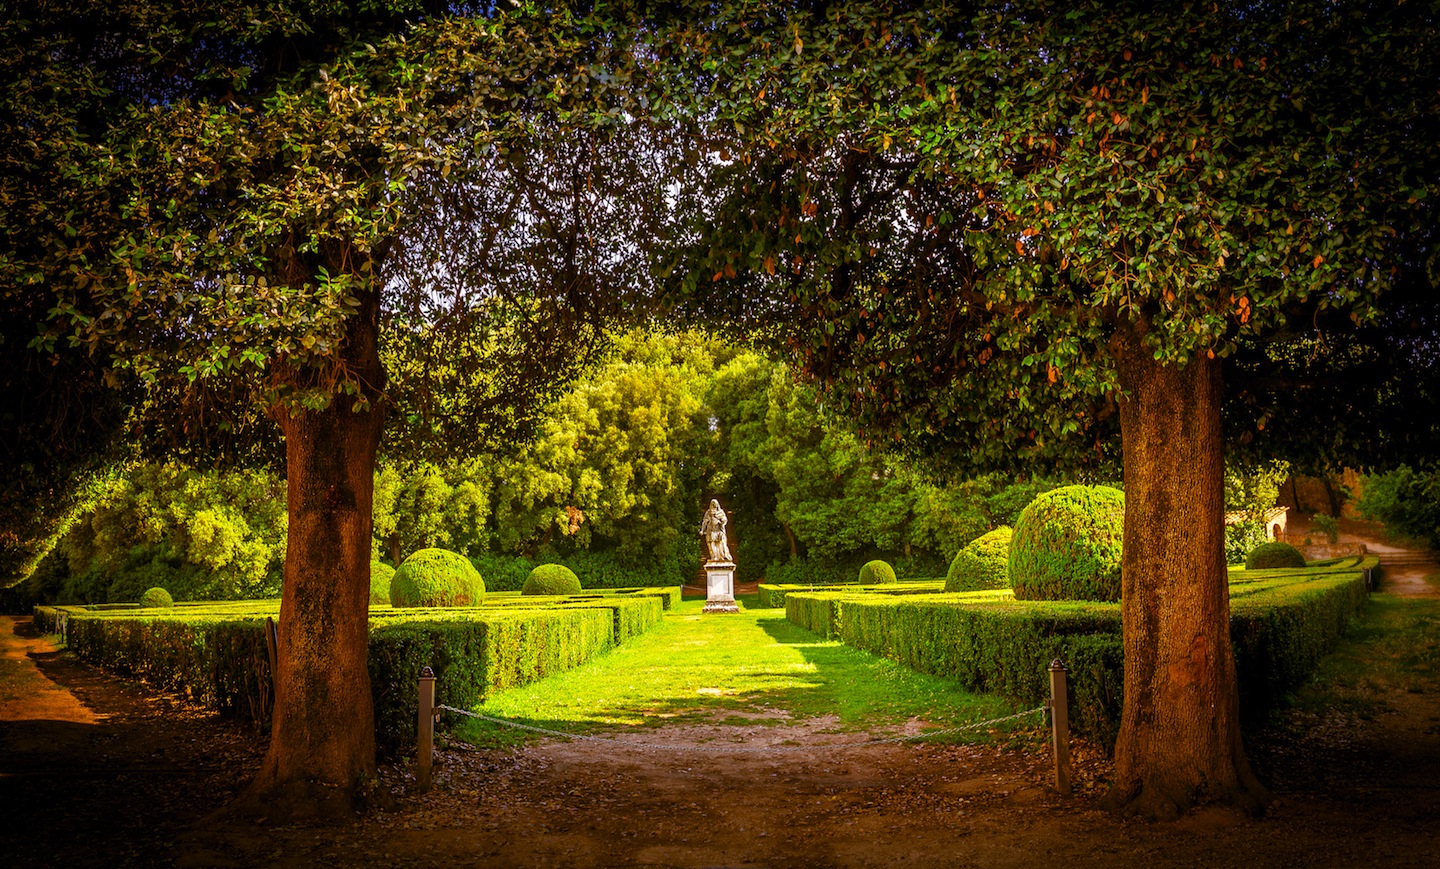 Gli Horti Leonini a San Quirico d'Orcia, bellissimo giardino all'italiana nel centro del borgo, Toscana